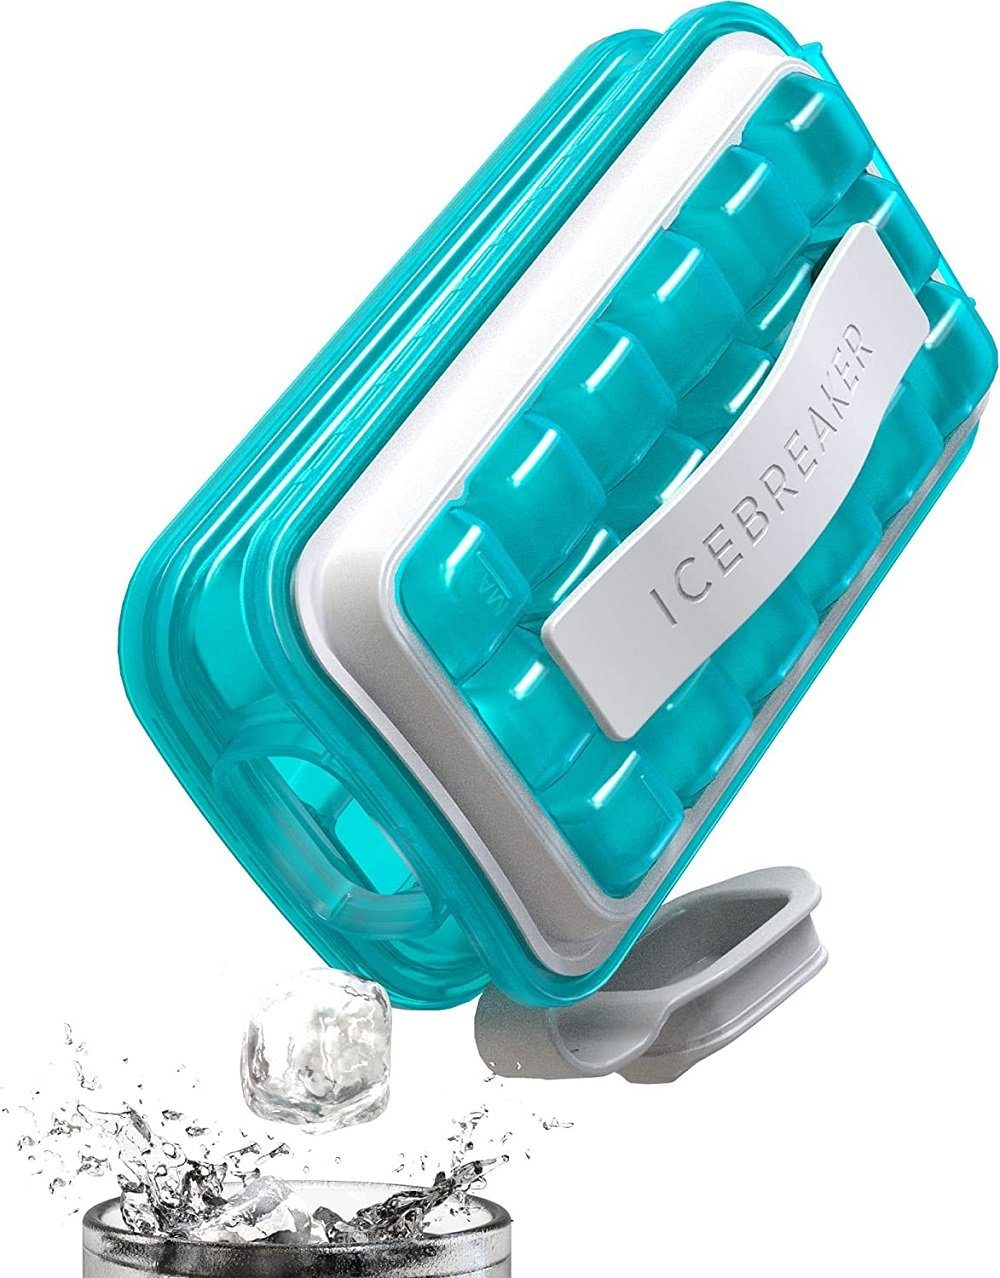 hygienische - Eiswürfelbereiter 18 ICEBREAKER Clear Blue - Eiswürfelform POP Eiswürfel, ICEBREAKER Silikon-Eiswürfelform Water